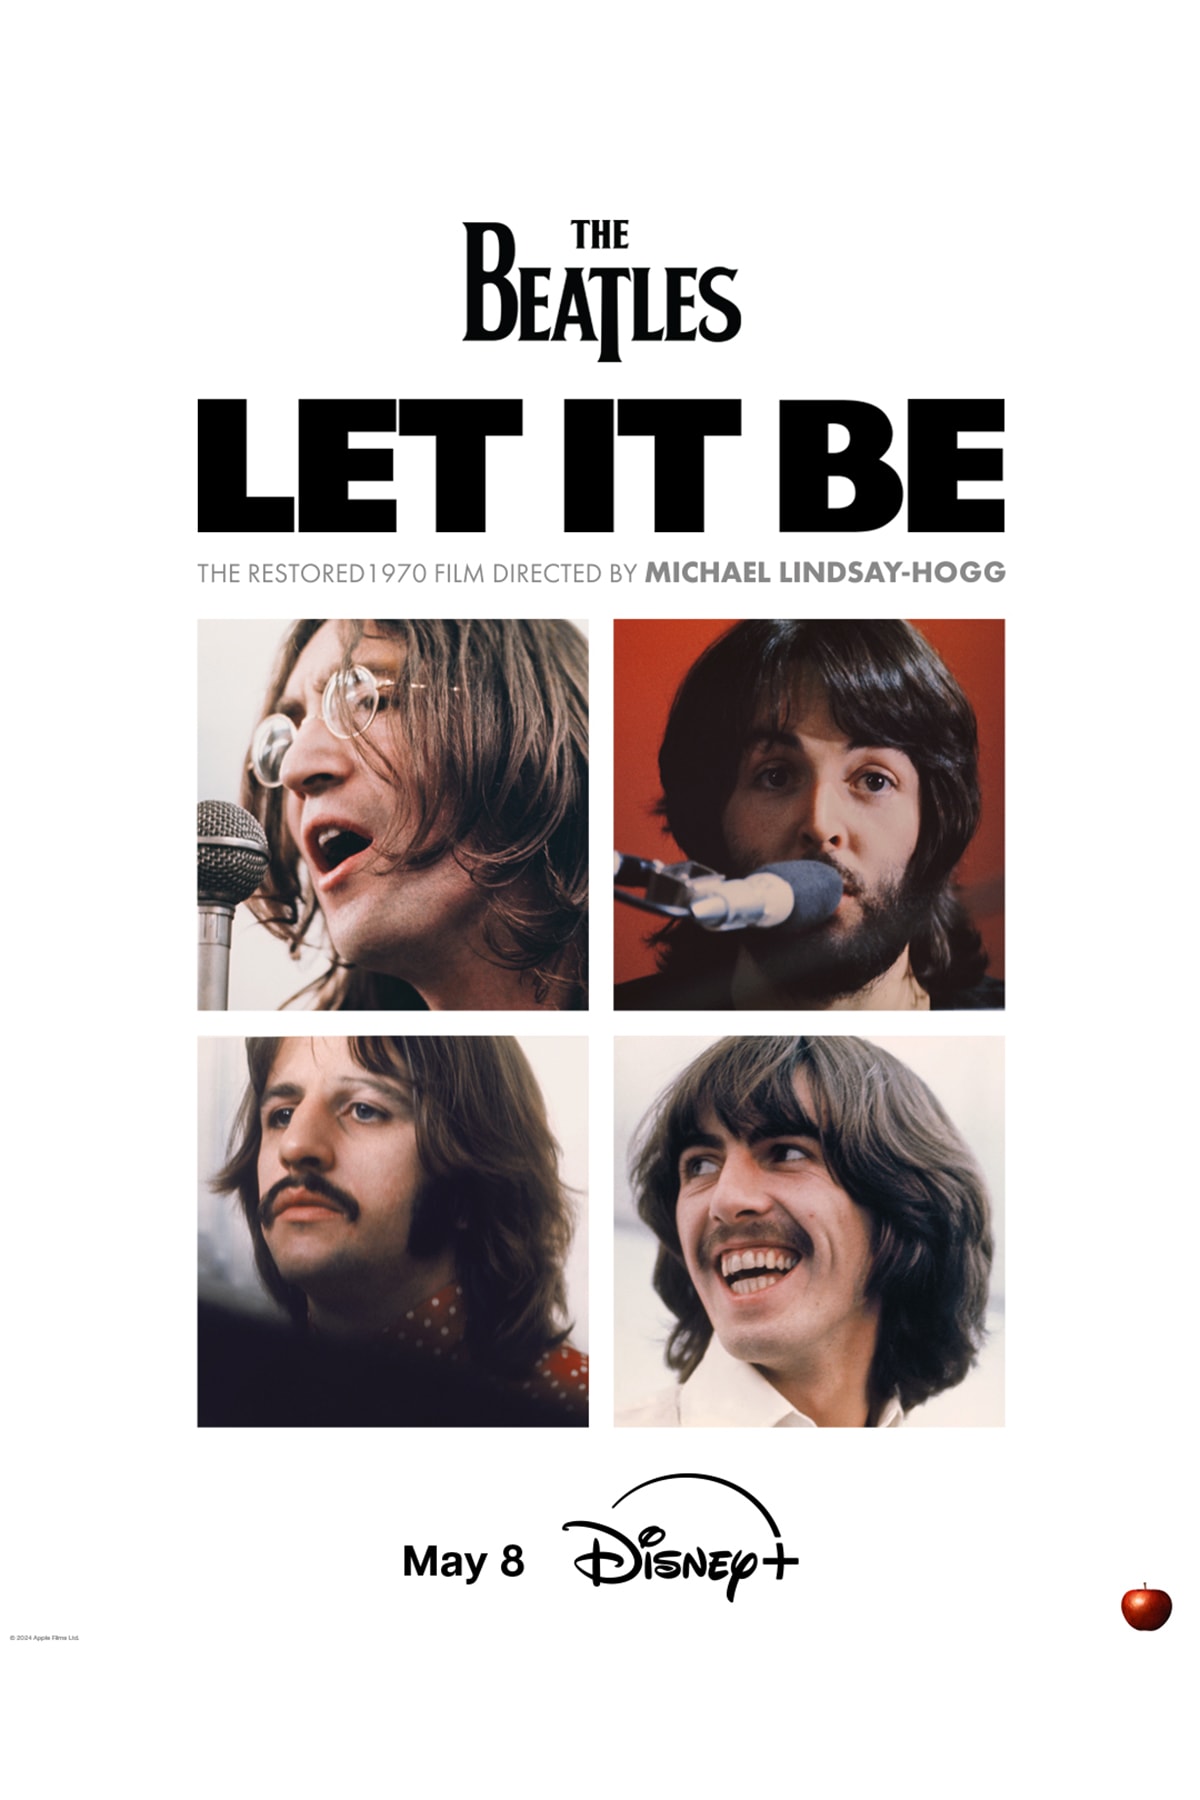  ビートルズのドキュメンタリー映画『レット・イット・ビー』の初レストア版が ディズニー プラスで配信決定 The Beatles in the 1970 film, Let it Be, fully restored for the first time, streaming May 8 only on Disney + Plus news